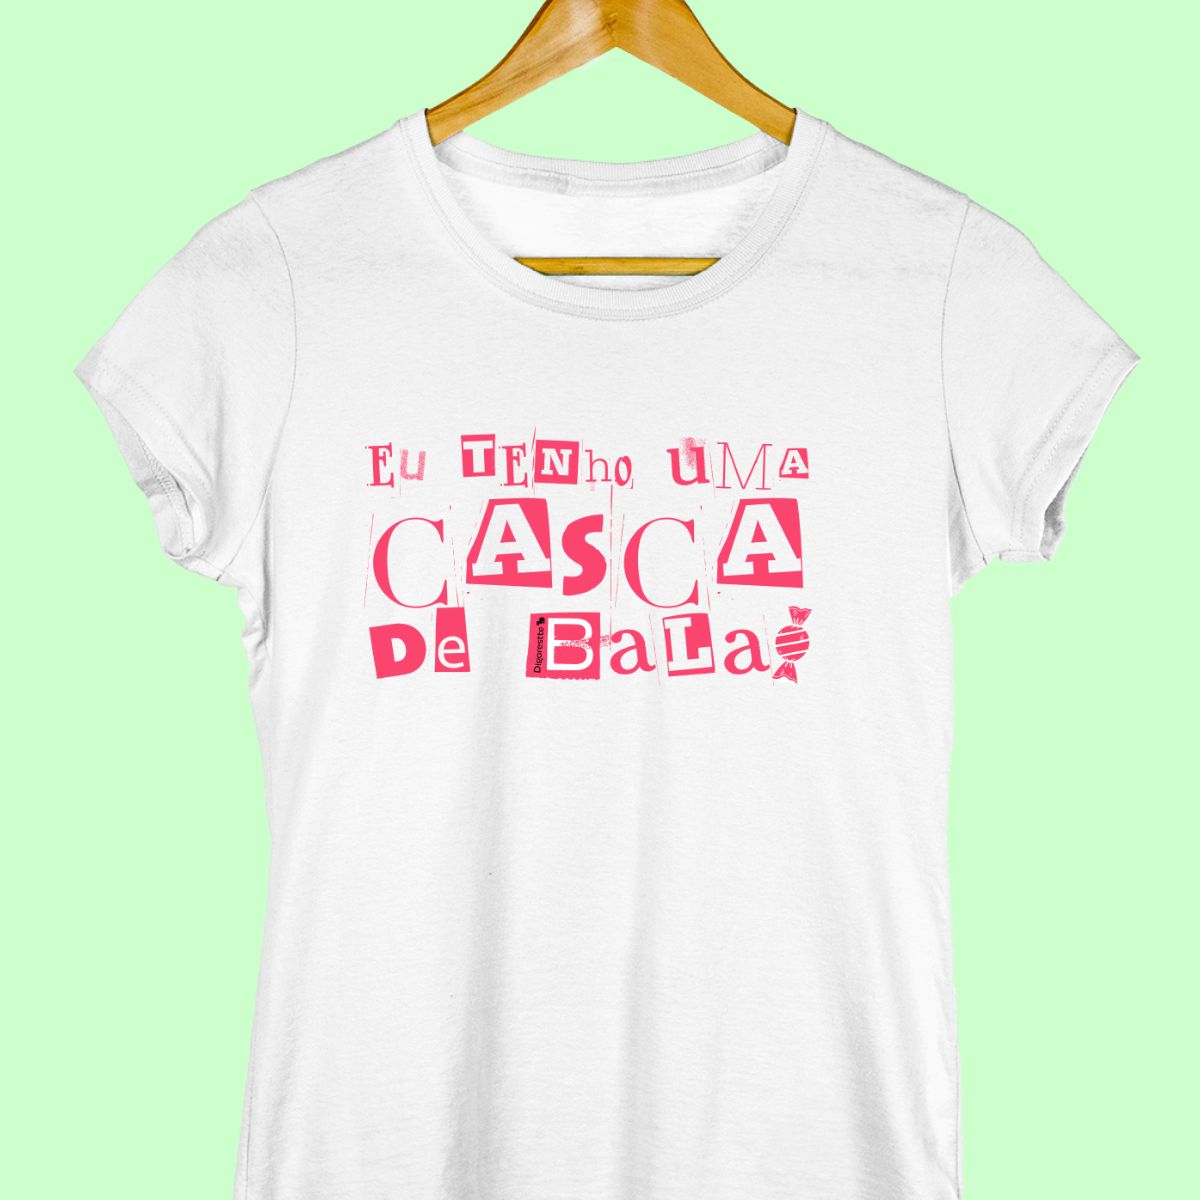 Camiseta com a frase "Eu tenho uma casca de bala" feminina branca.